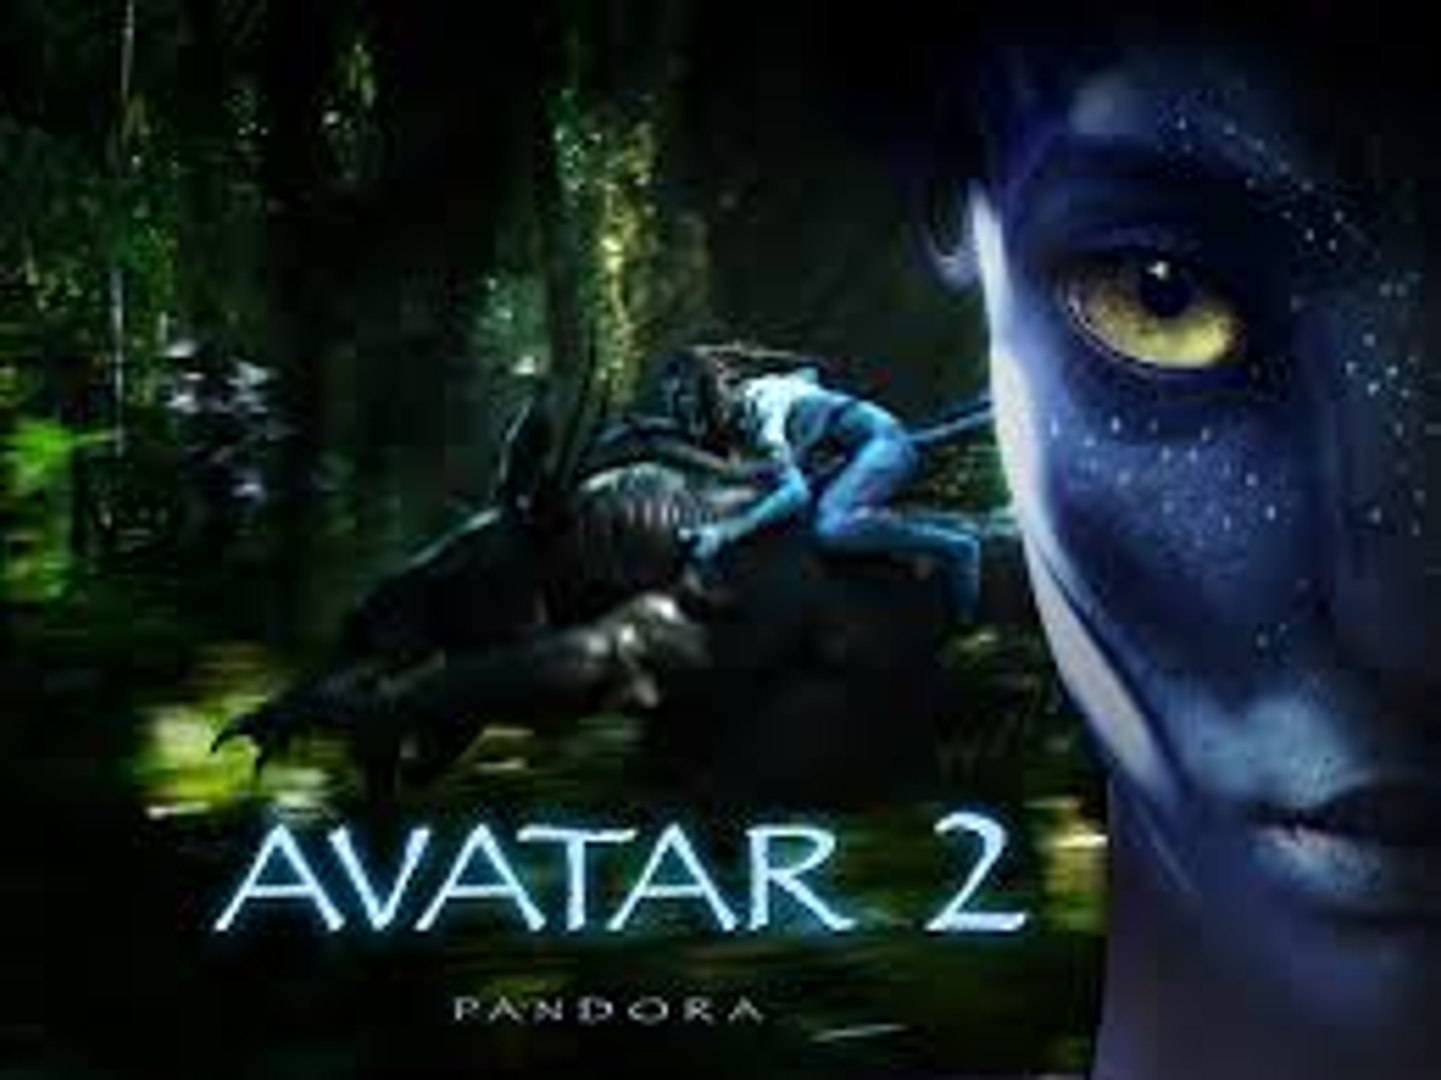 Nonton Film Avatar 2 Subtitle Indonesia - FilmsWalls